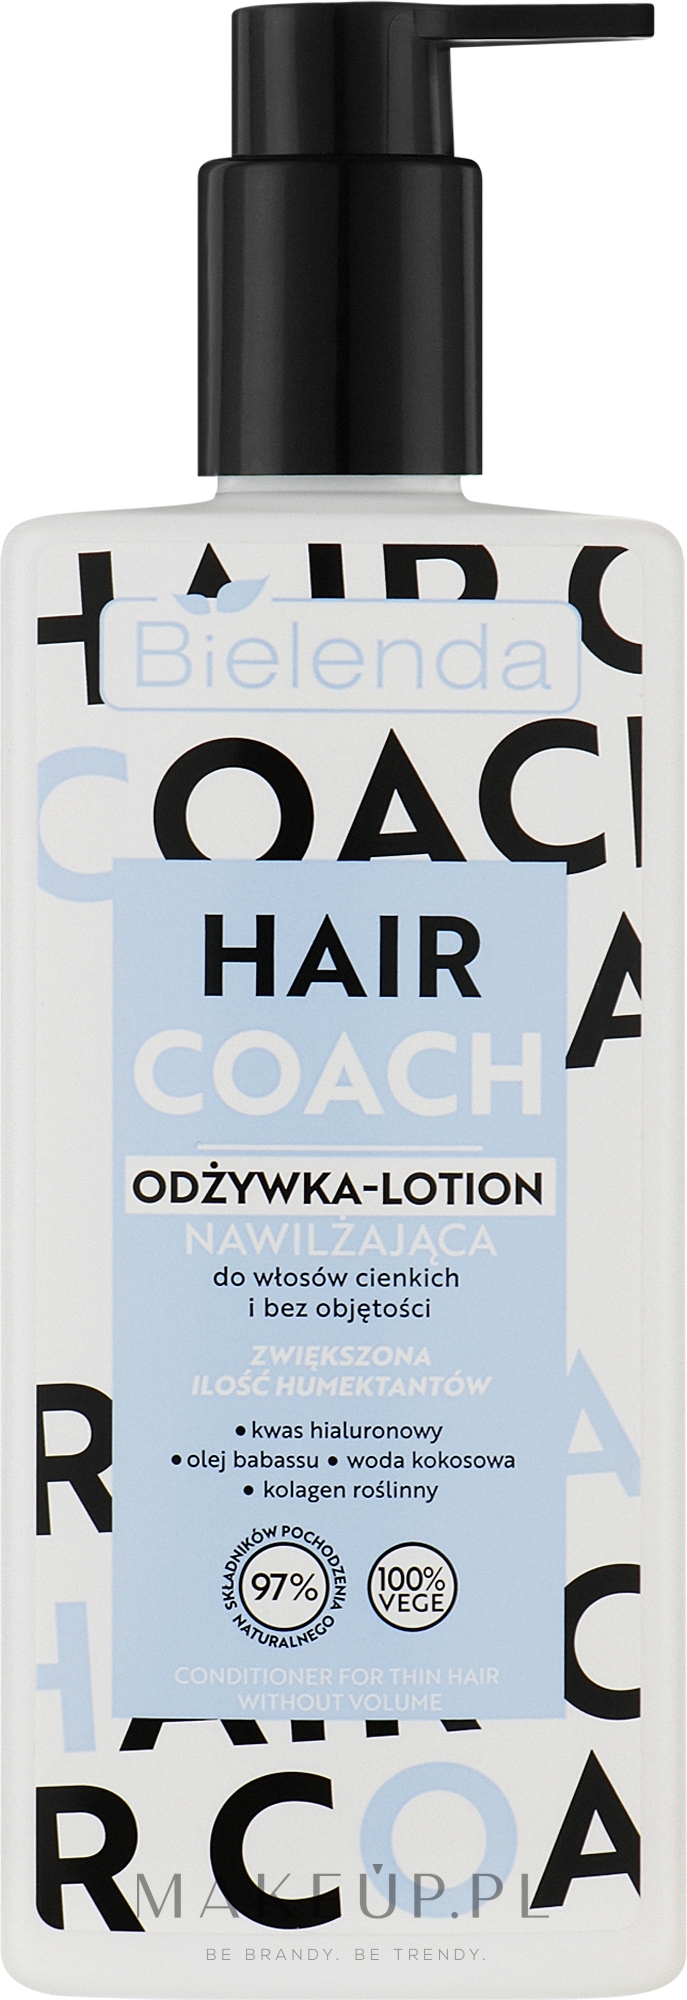 Nawilżająca odżywka-lotion do włosów - Bielenda Hair Coach — Zdjęcie 280 ml